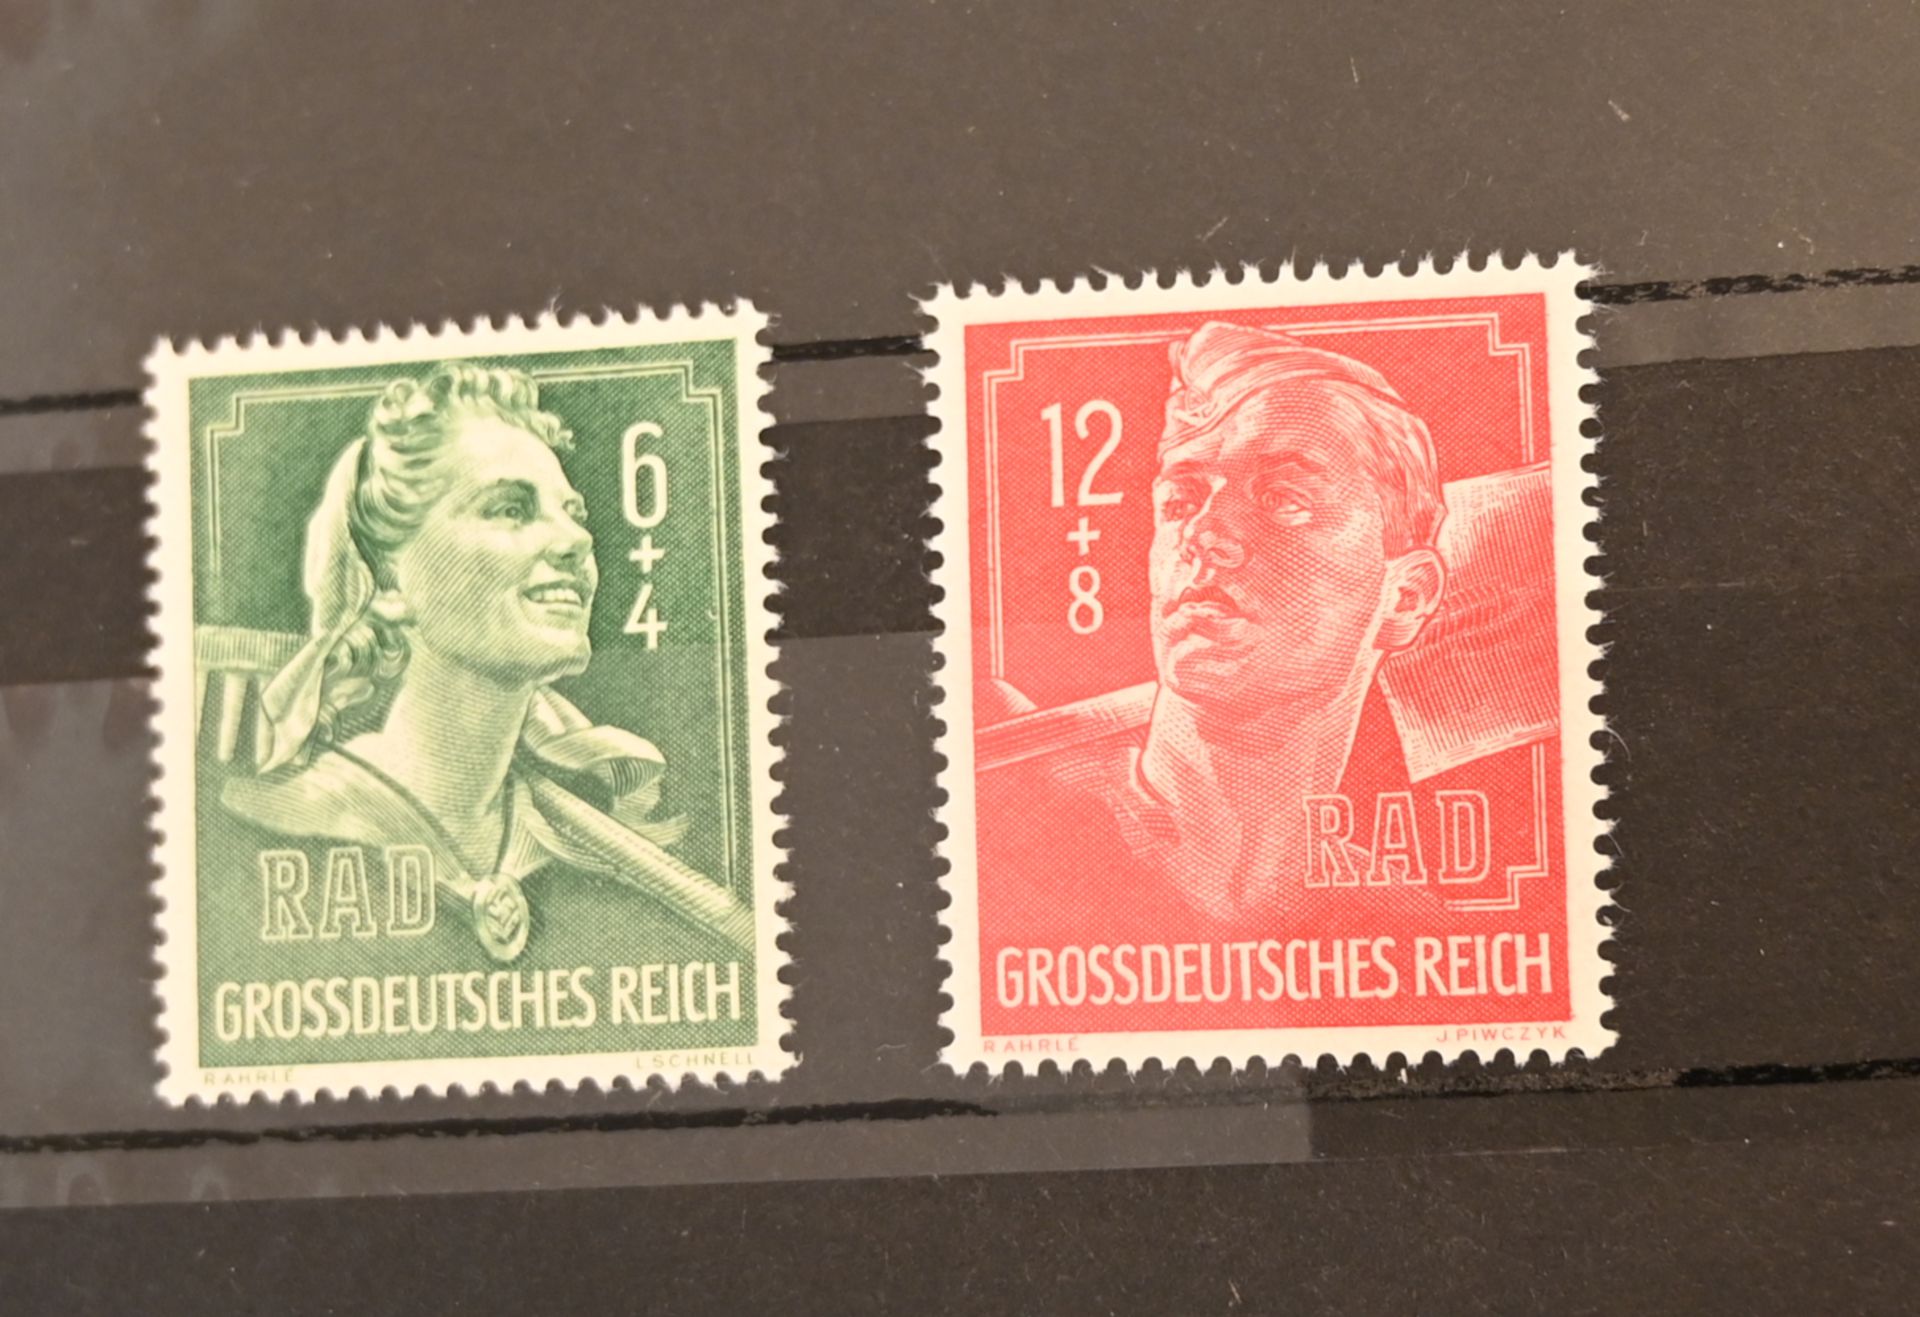 33 Ordner mit ETBs von 1984-2020 sowie 1 Briefmarkenalbum Deutsches Reich, 1 Album BRD, DDR, Alle We - Bild 22 aus 27